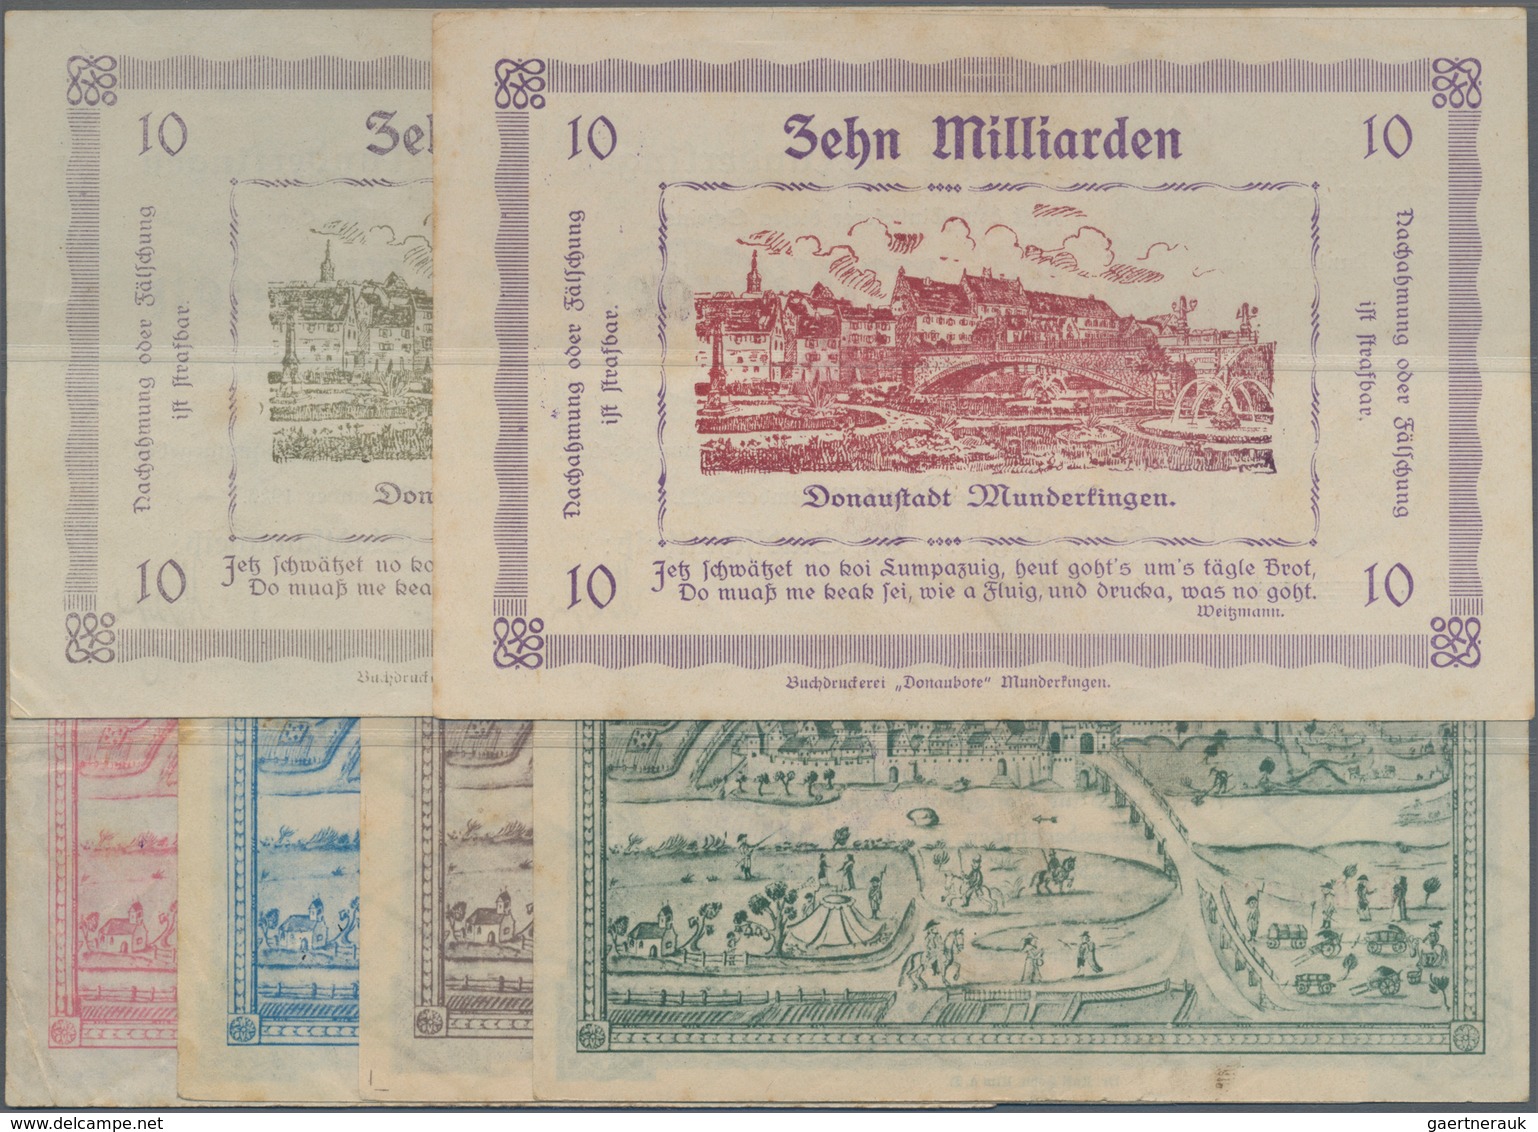 Deutschland - Notgeld - Württemberg: Munderkingen, Stadt, 10 (2, Farbvarianten) Mrd. Mark, 1.11.1923 - [11] Local Banknote Issues